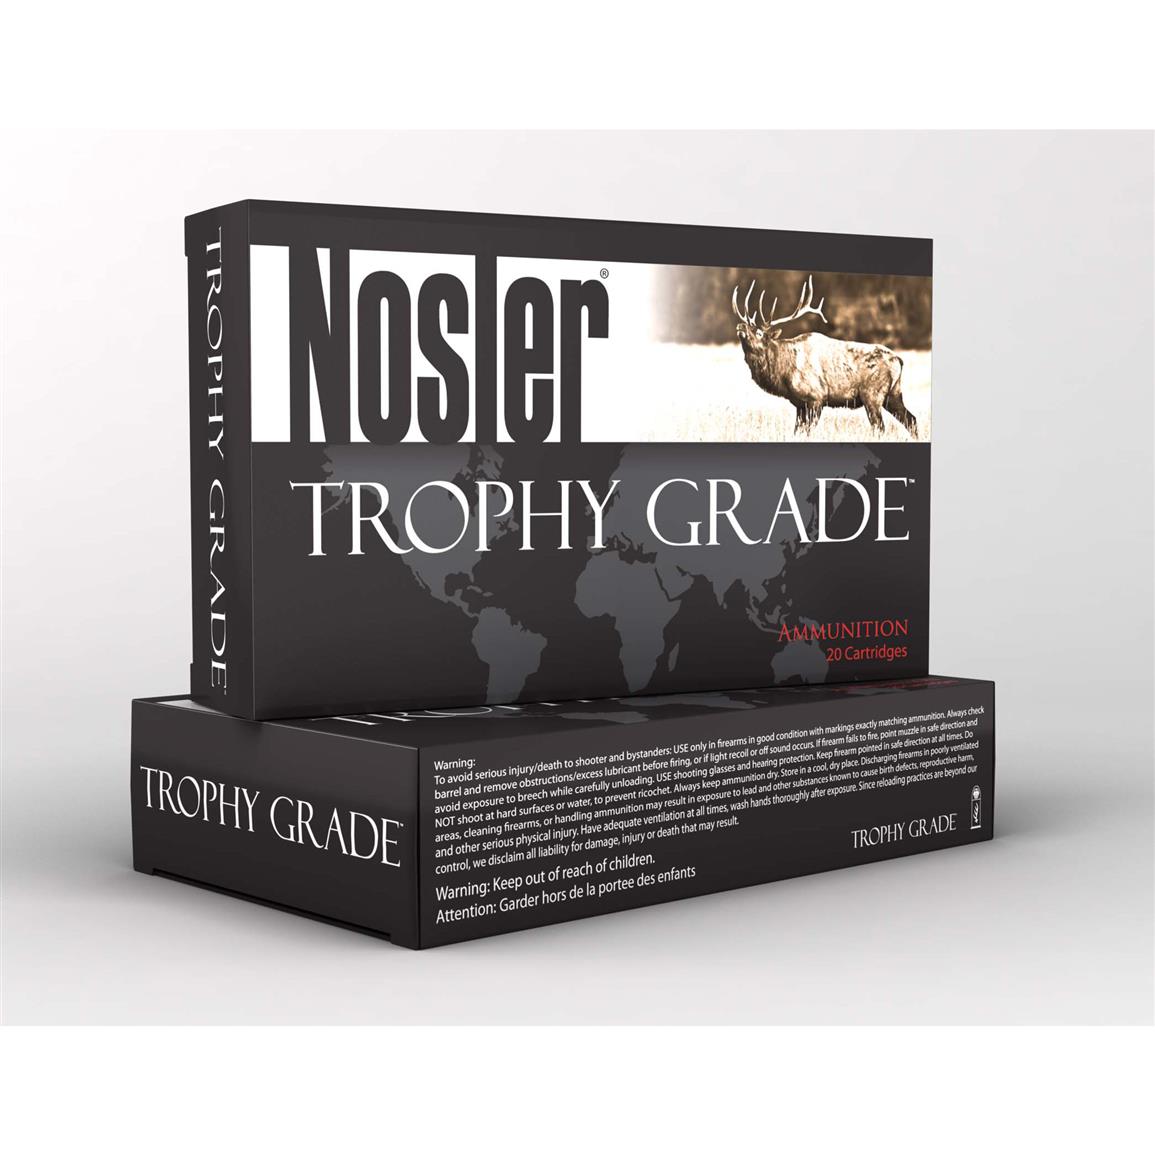 Nosler Trophy Grade, .300 Win. Mag., AccuBond, 180 Grain, 20 Rounds